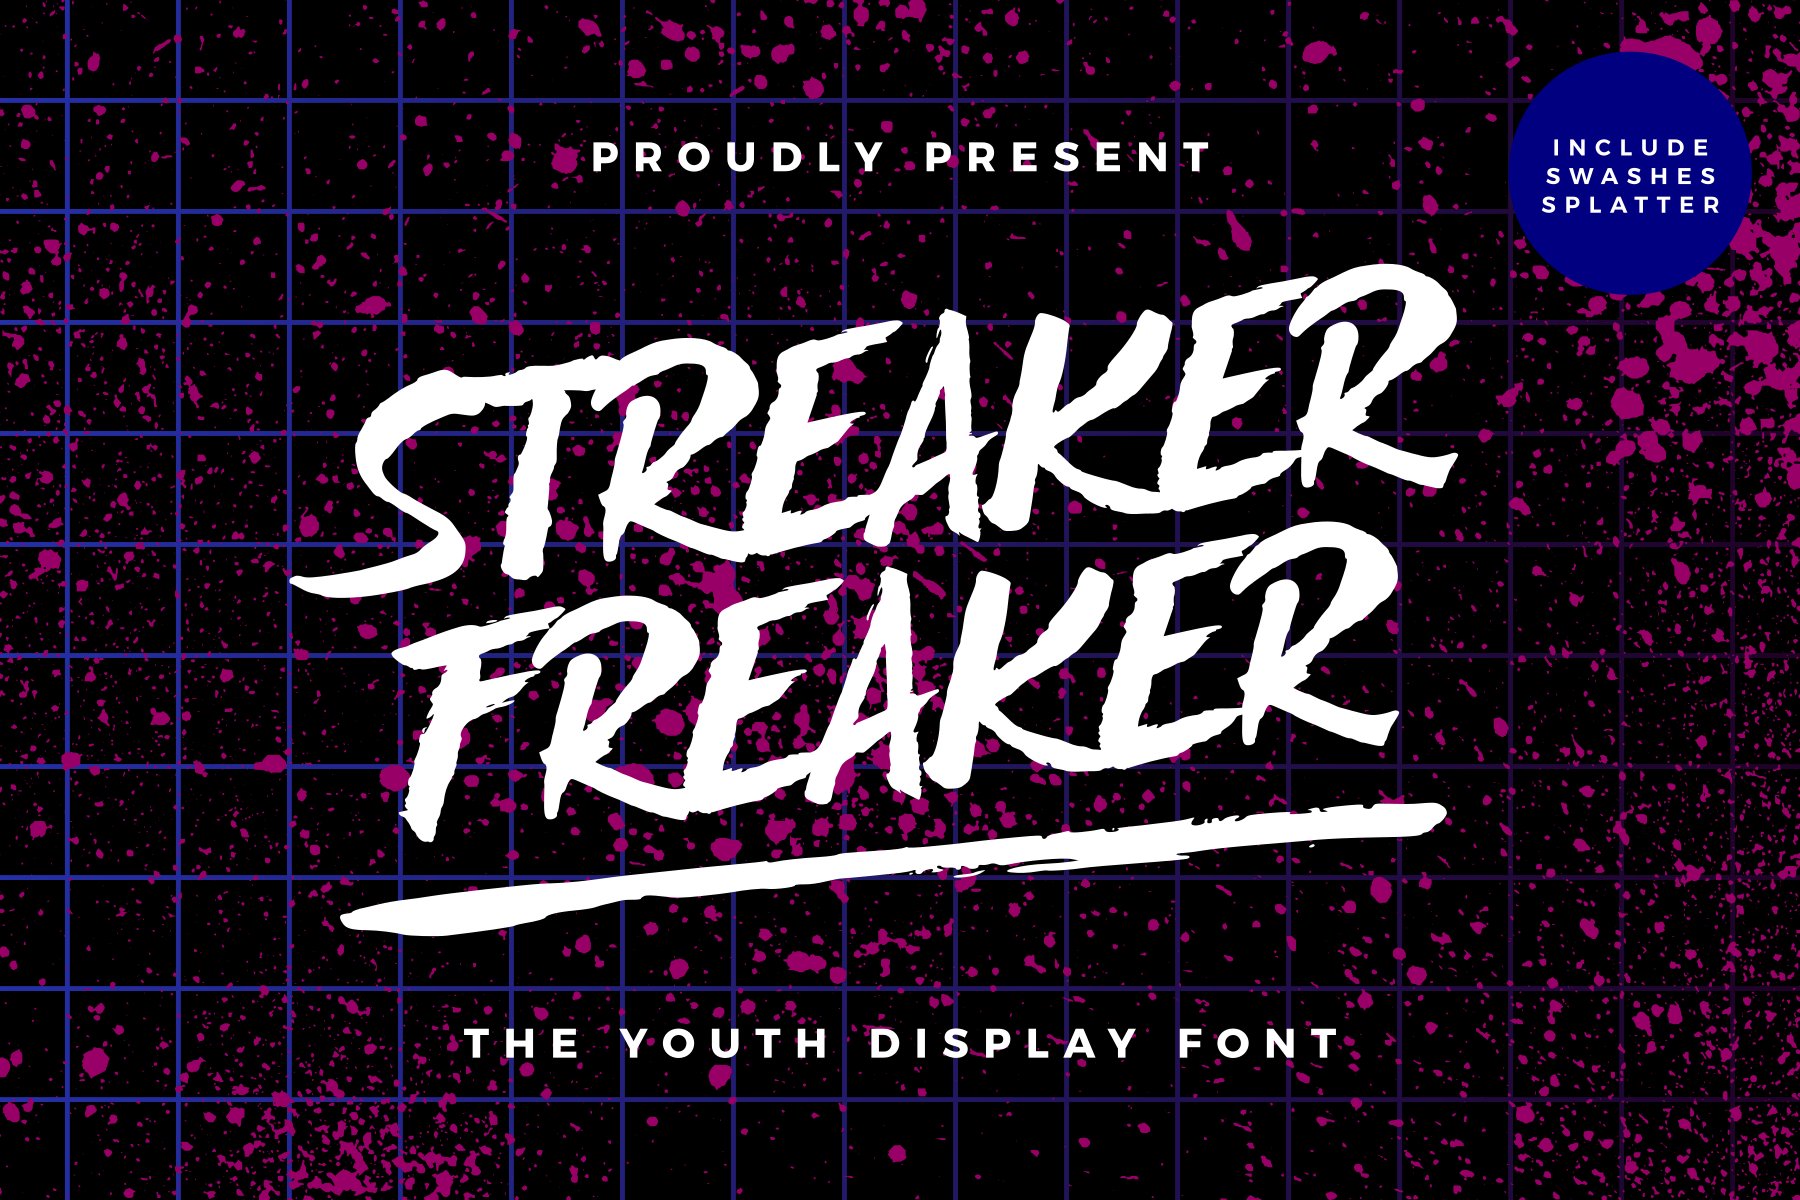 Streaker Freaker - Brush Font cover image.